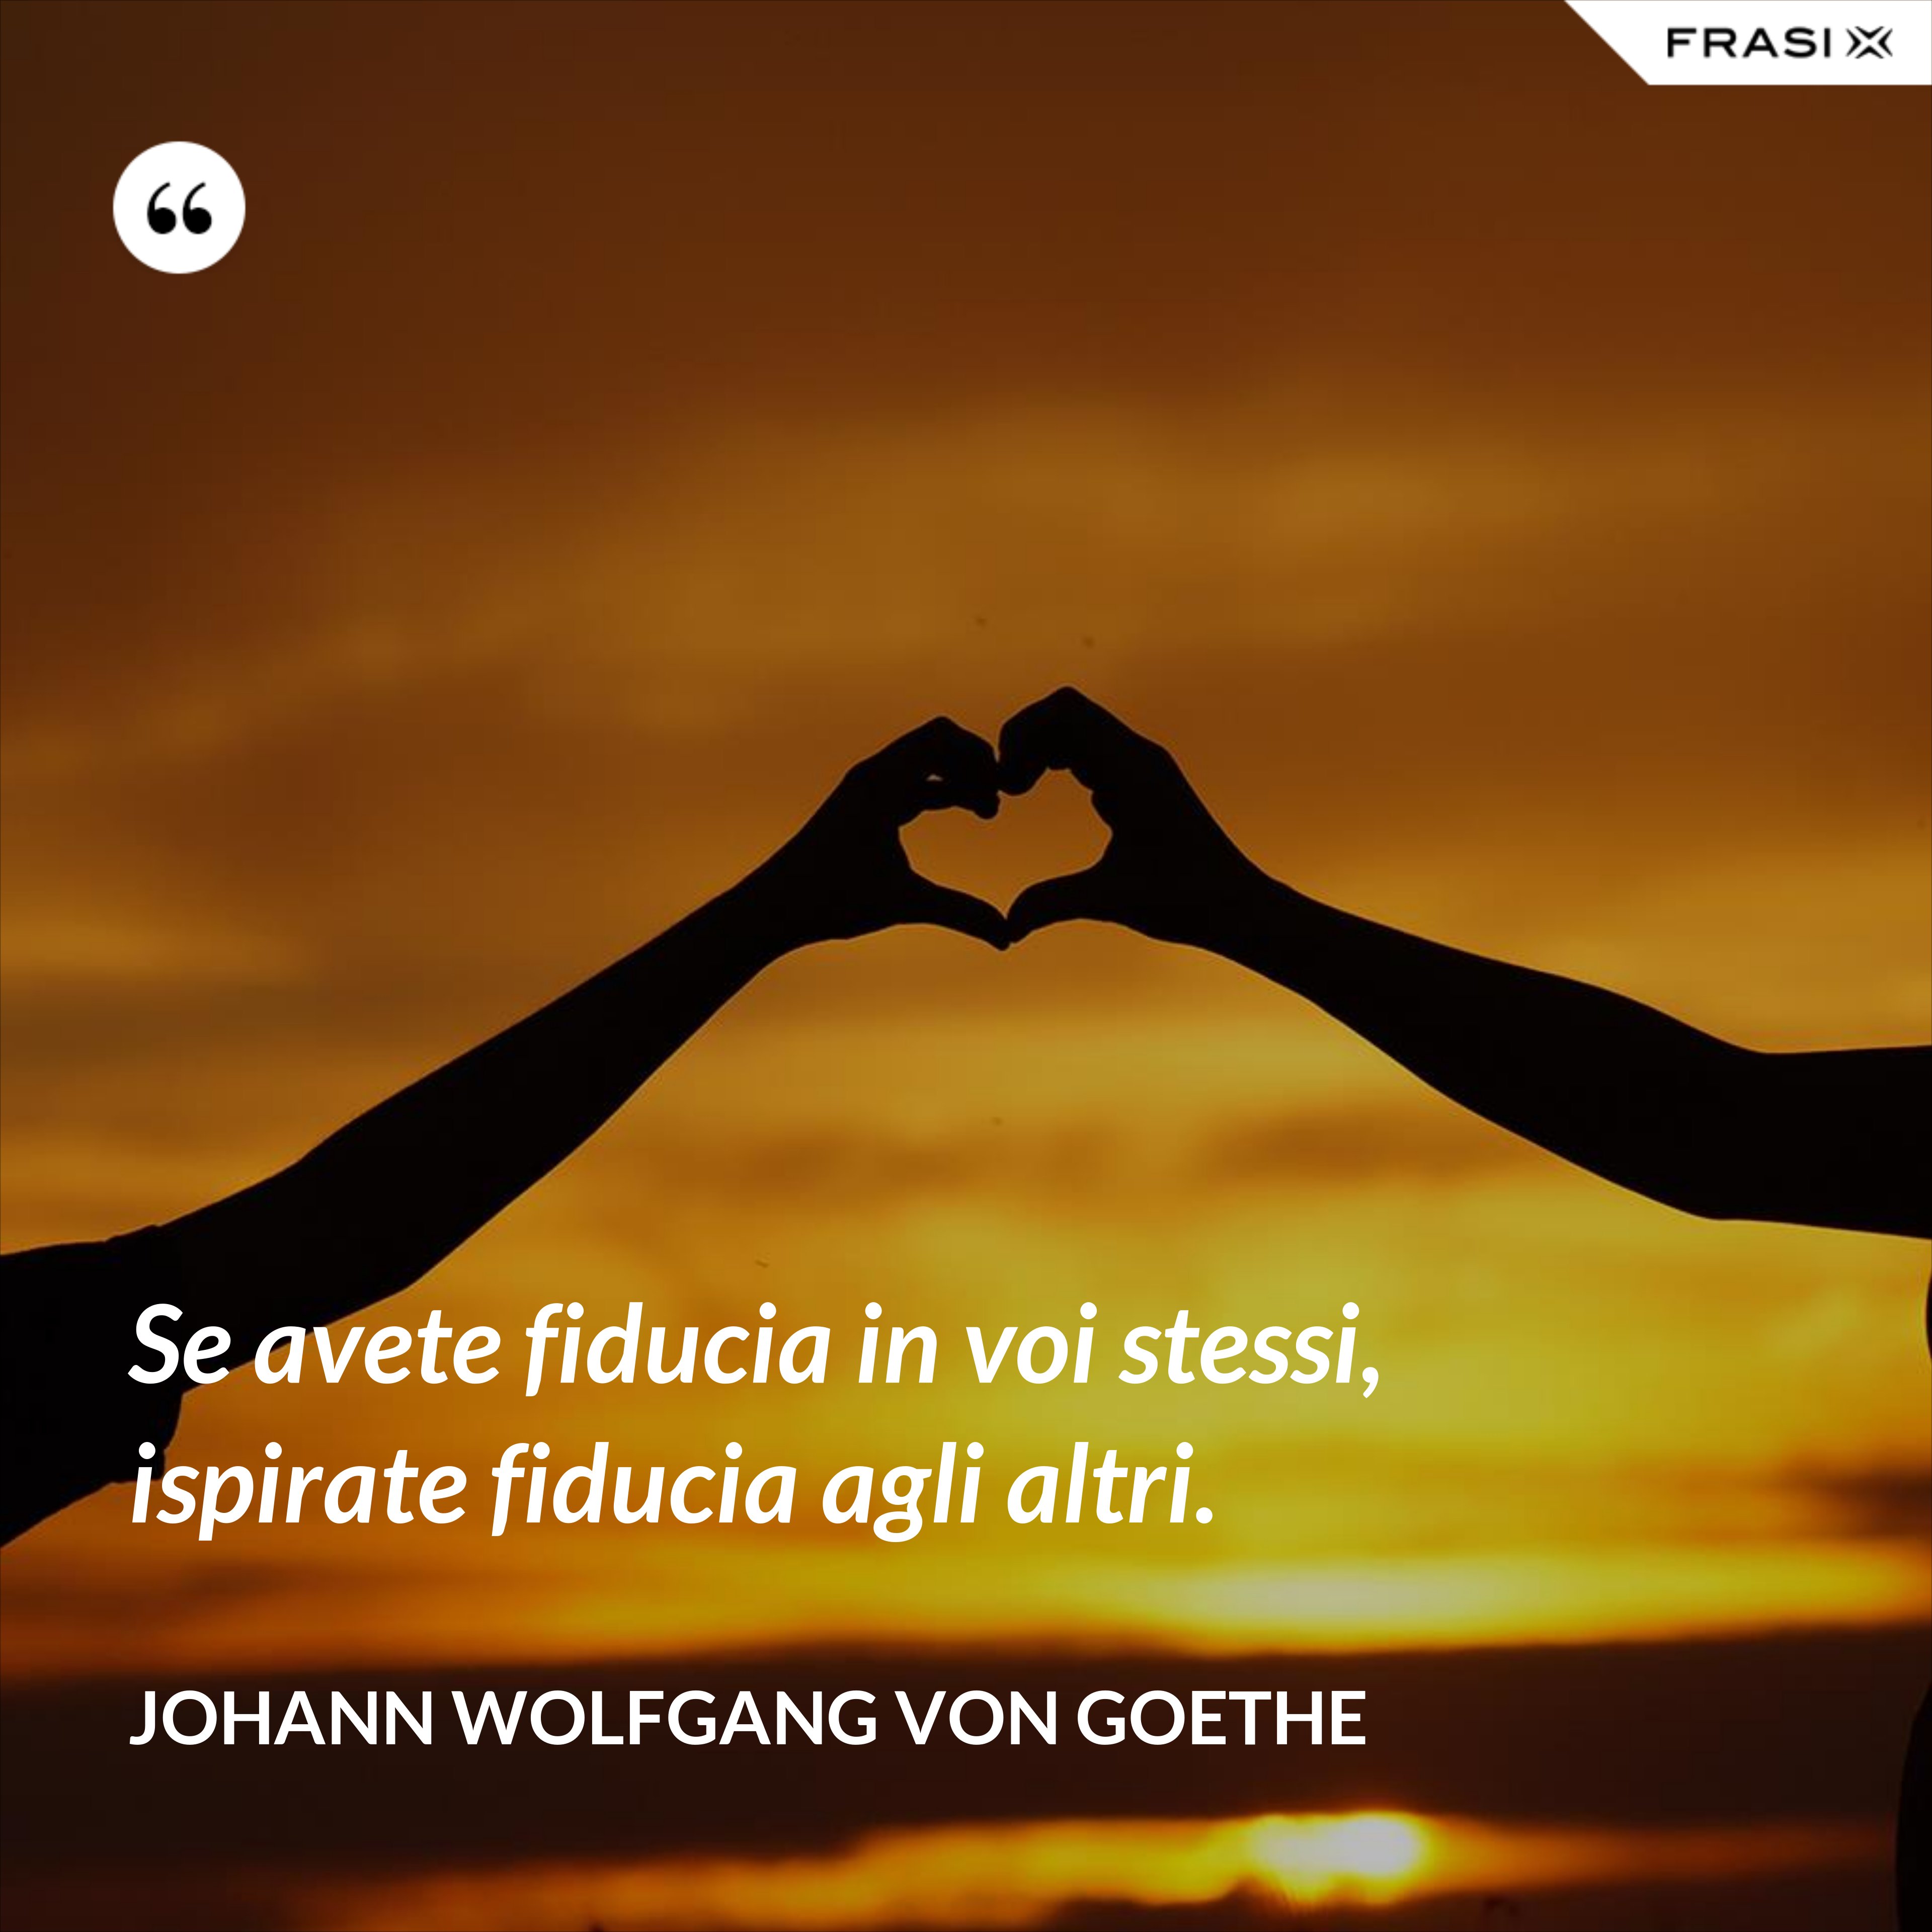 Se avete fiducia in voi stessi, ispirate fiducia agli altri. - Johann Wolfgang von Goethe